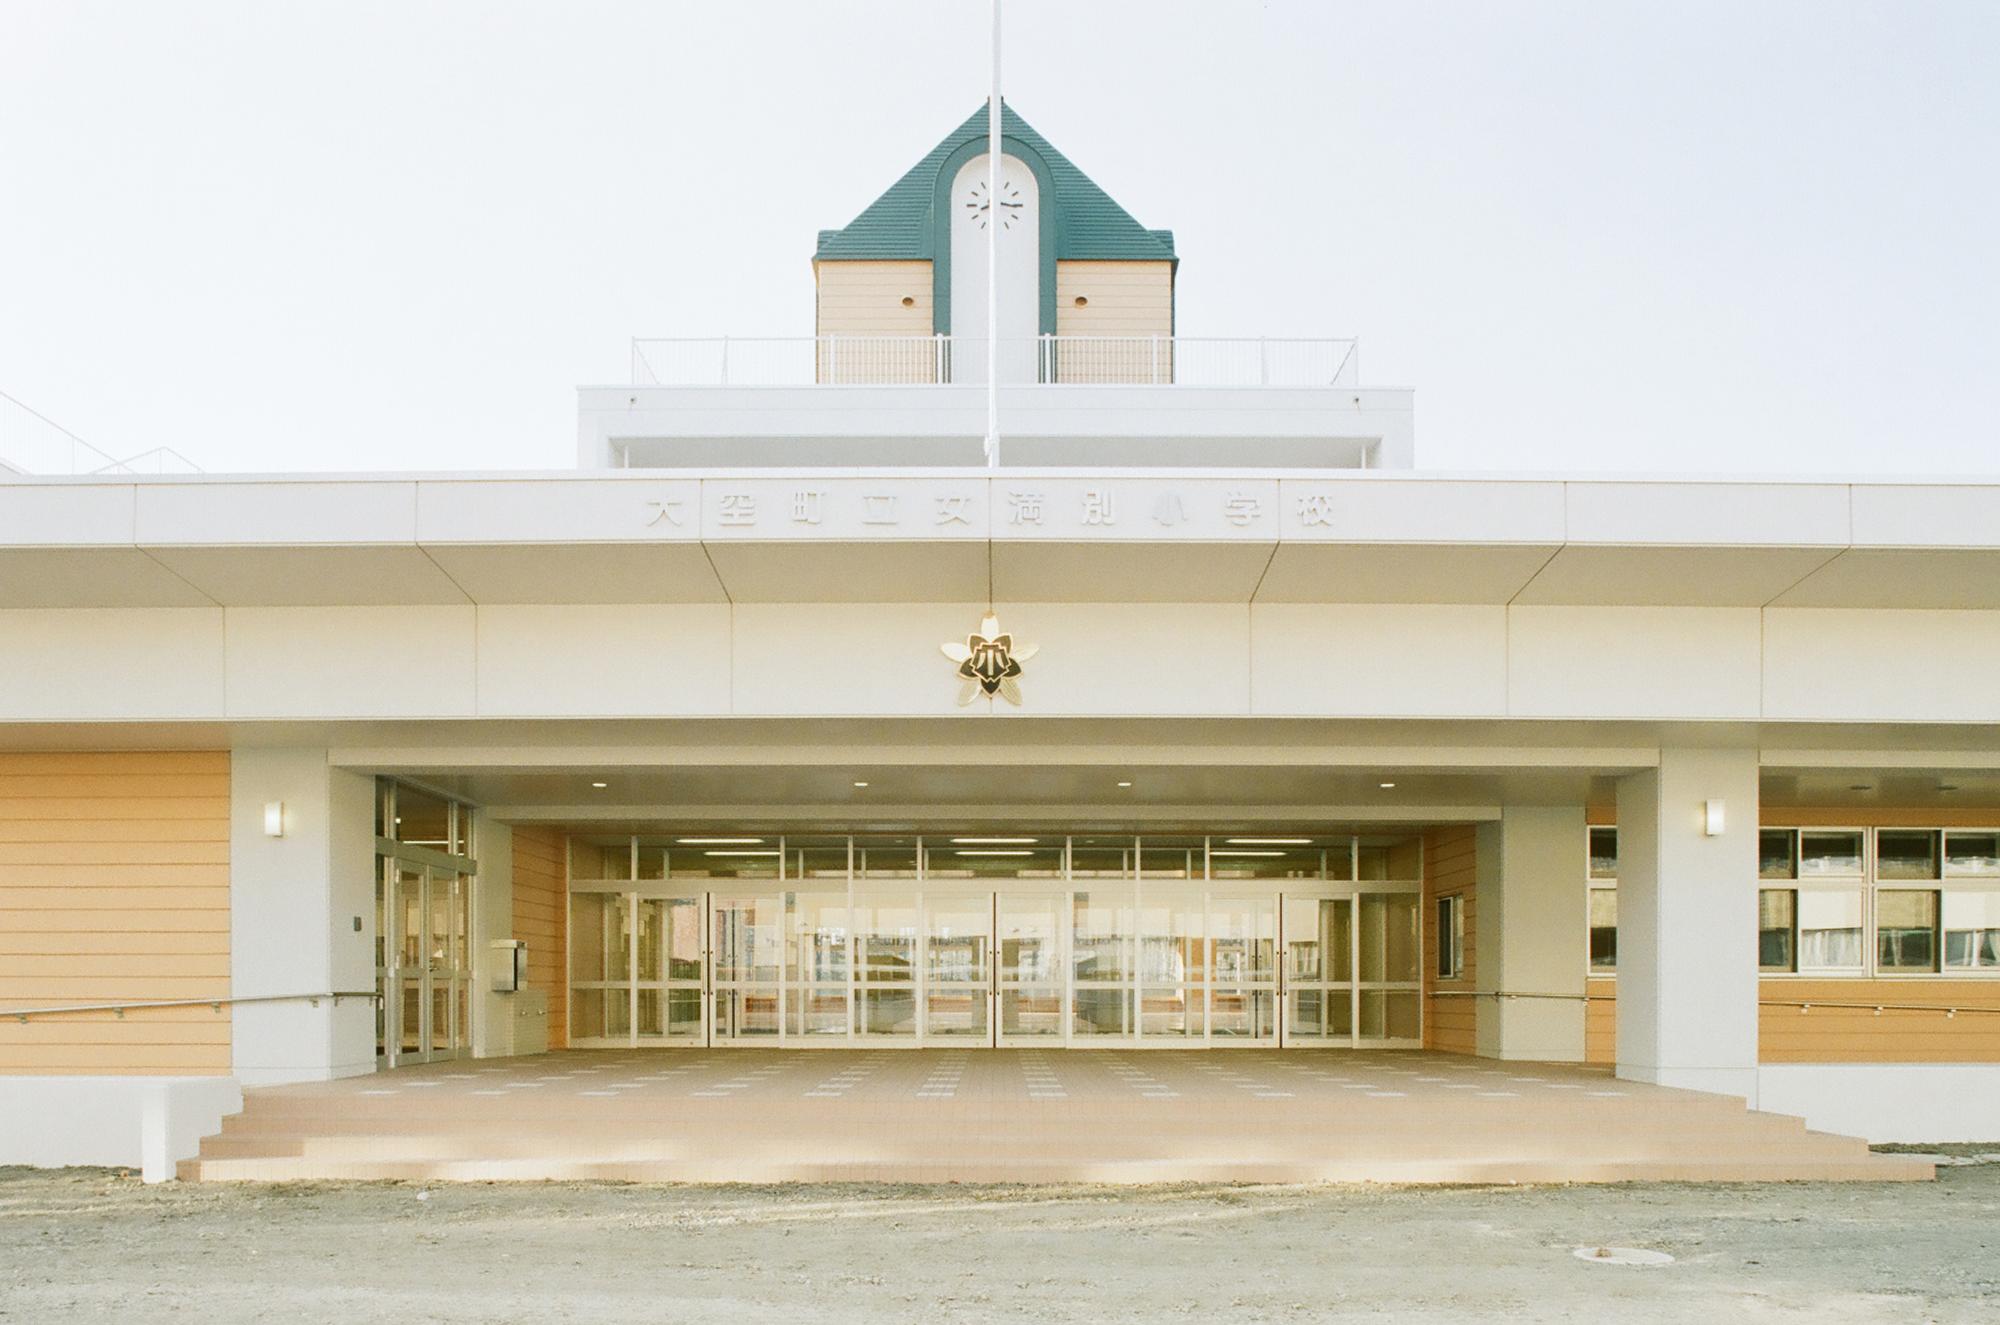 広い正面玄関中央に校章が飾られ、上の階には緑色の三角屋根の時計台がある校舎の写真